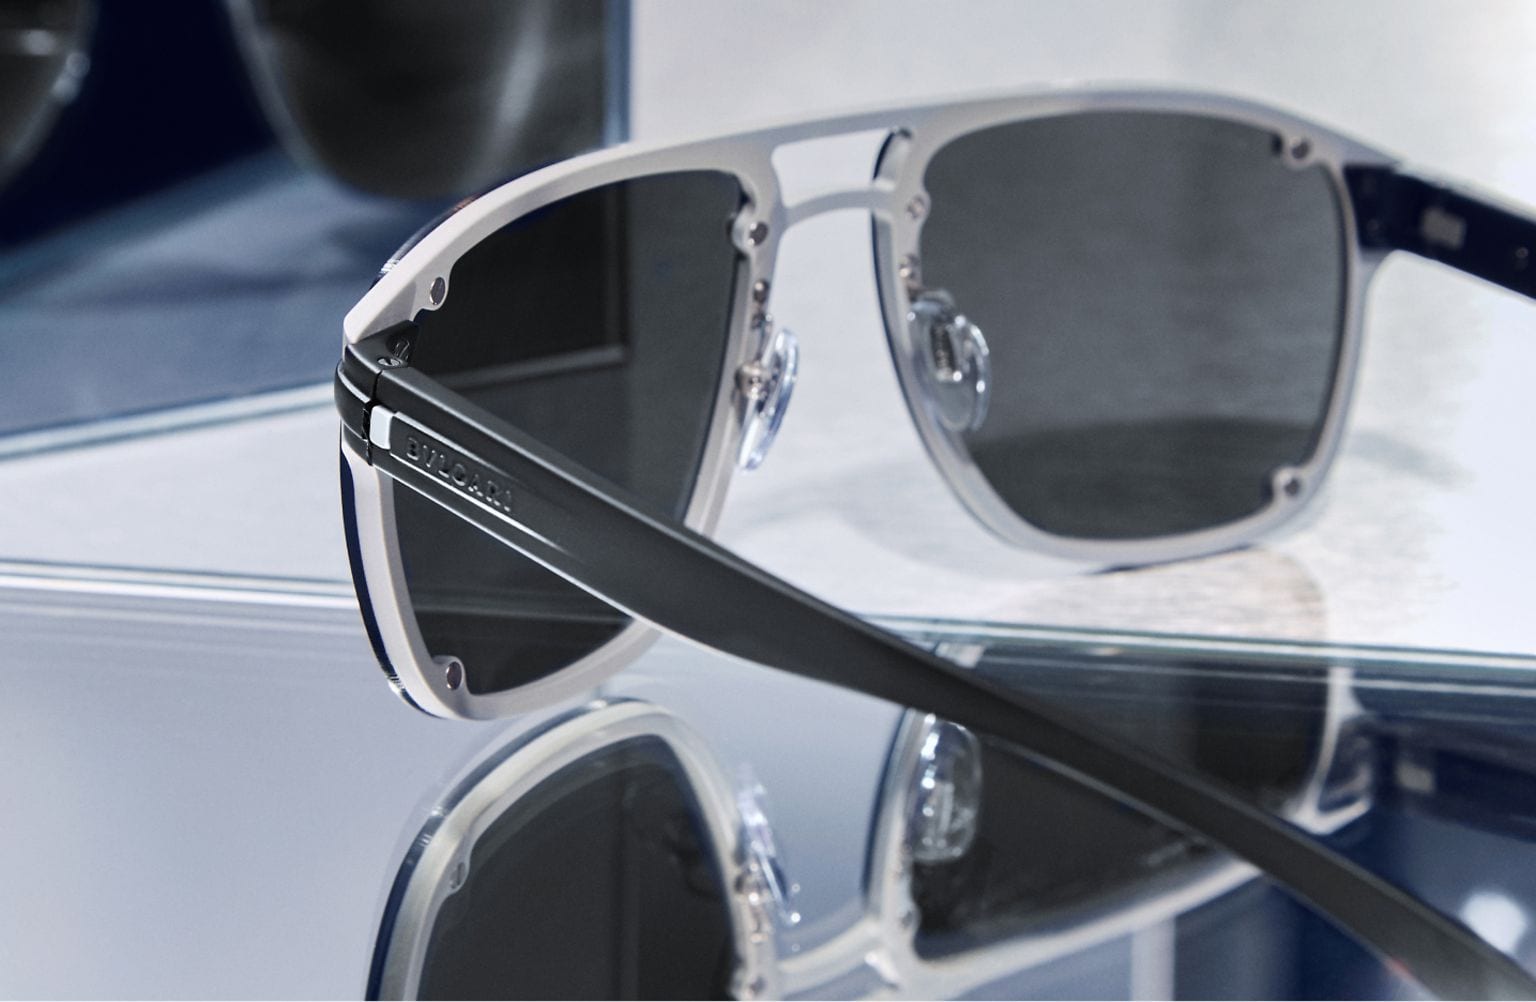 Louis Vuitton: The 4 Best Luxury Sunglasses for Men 